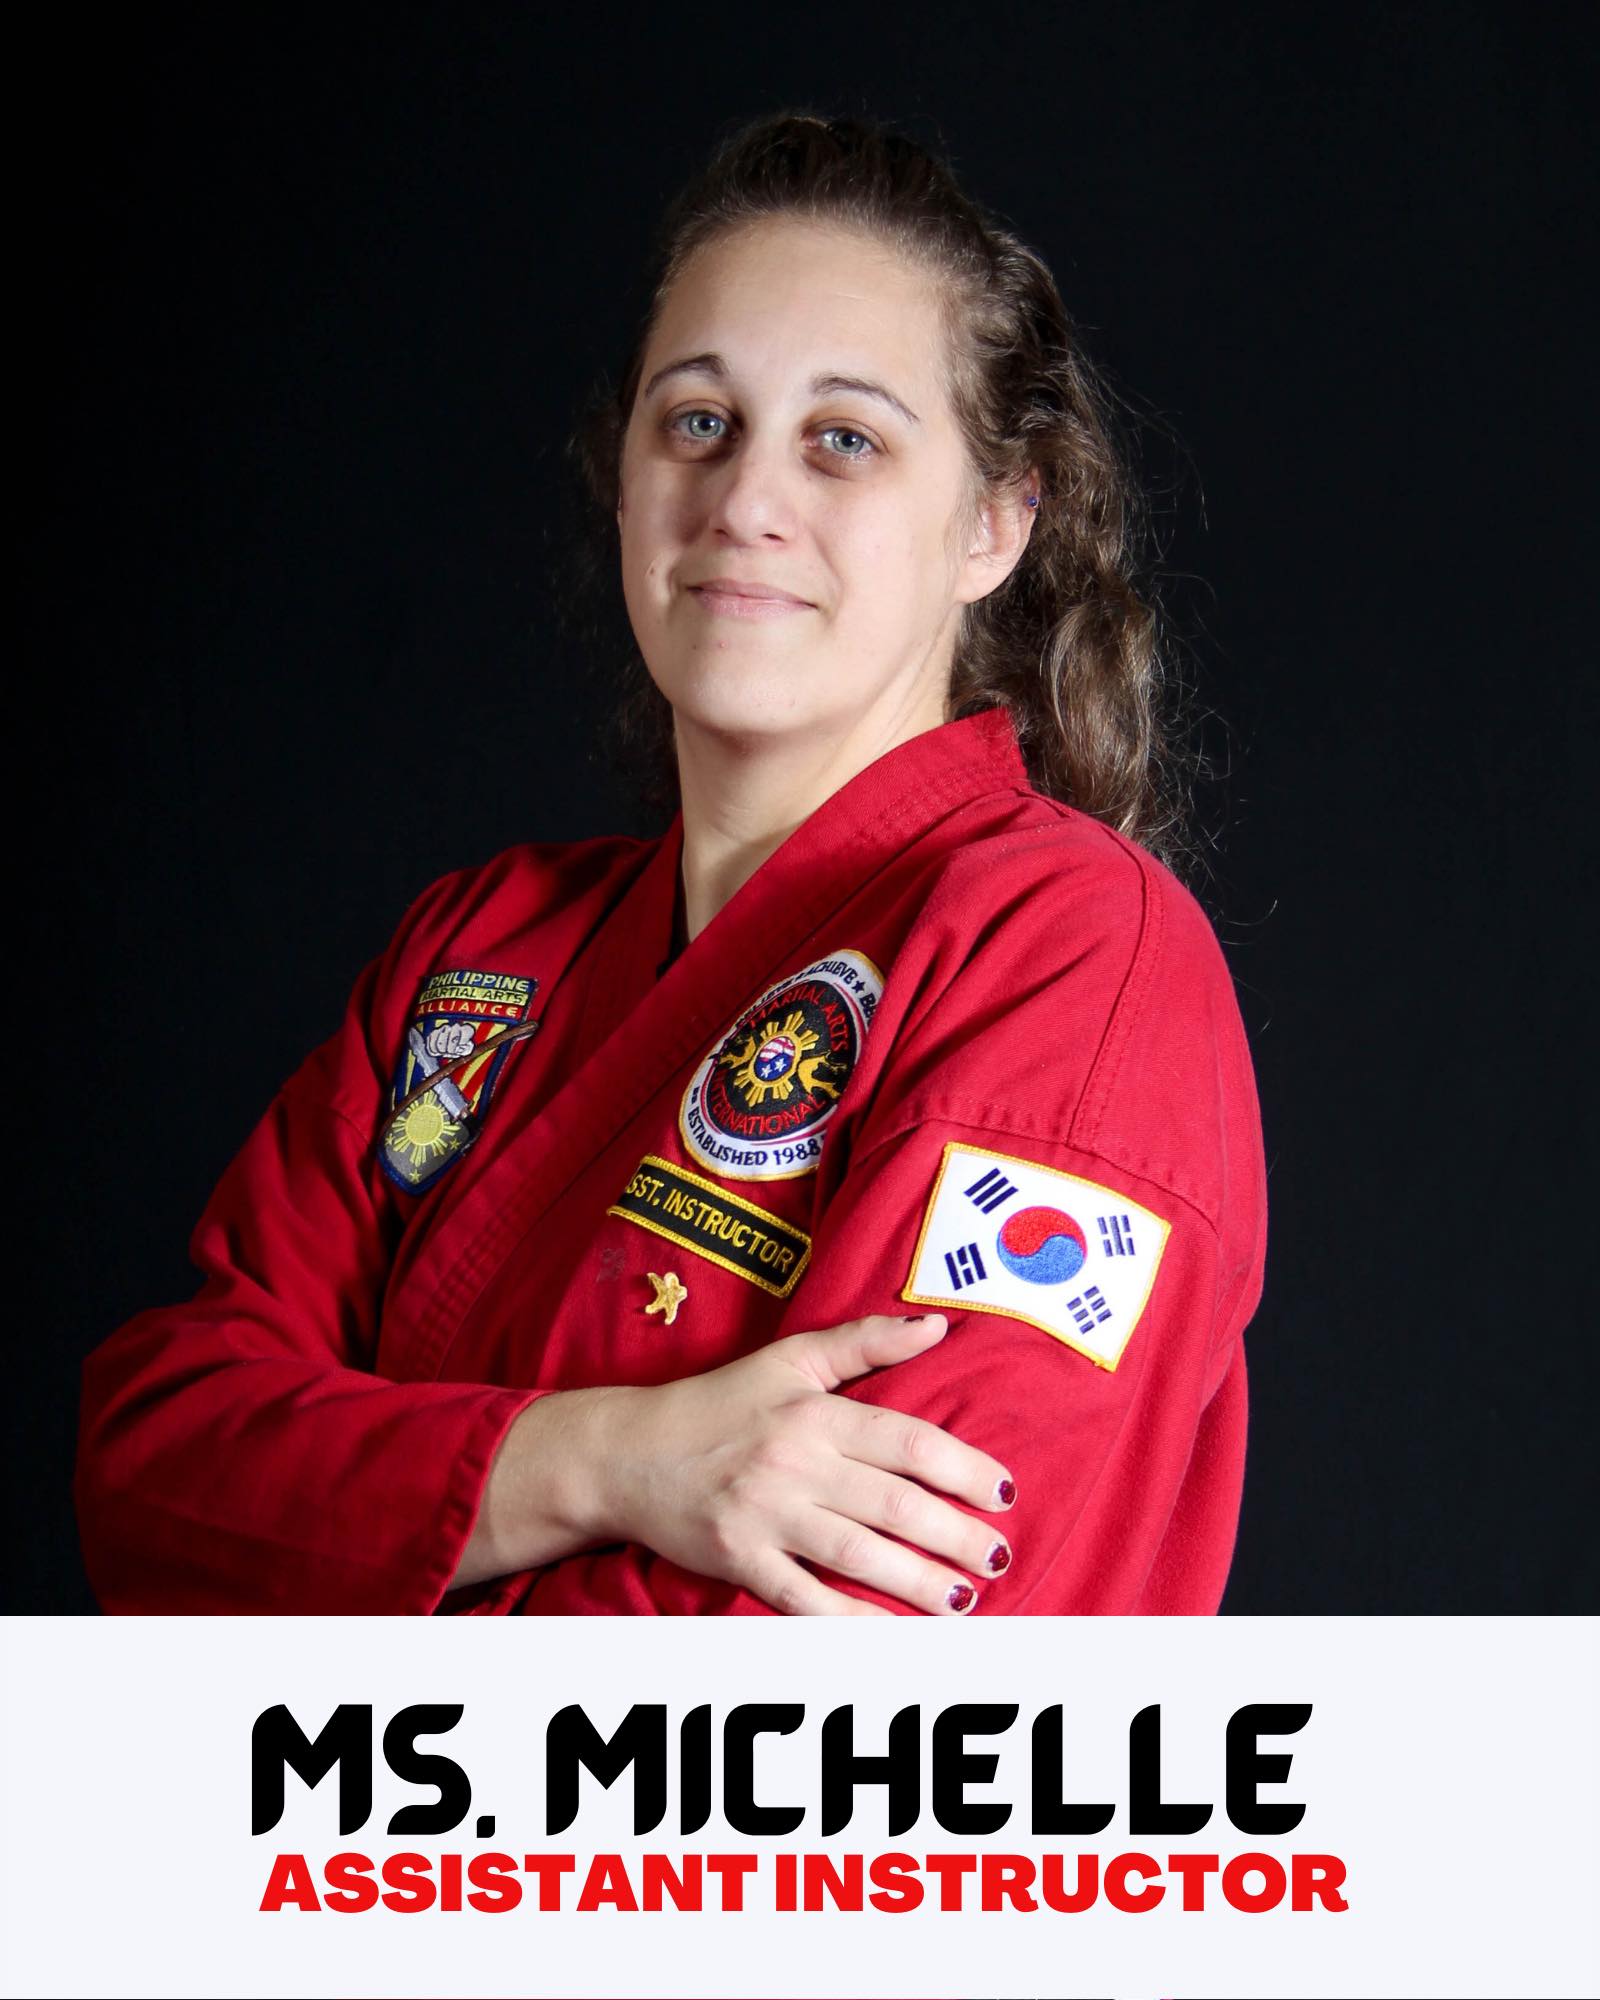 Ms. Michelle